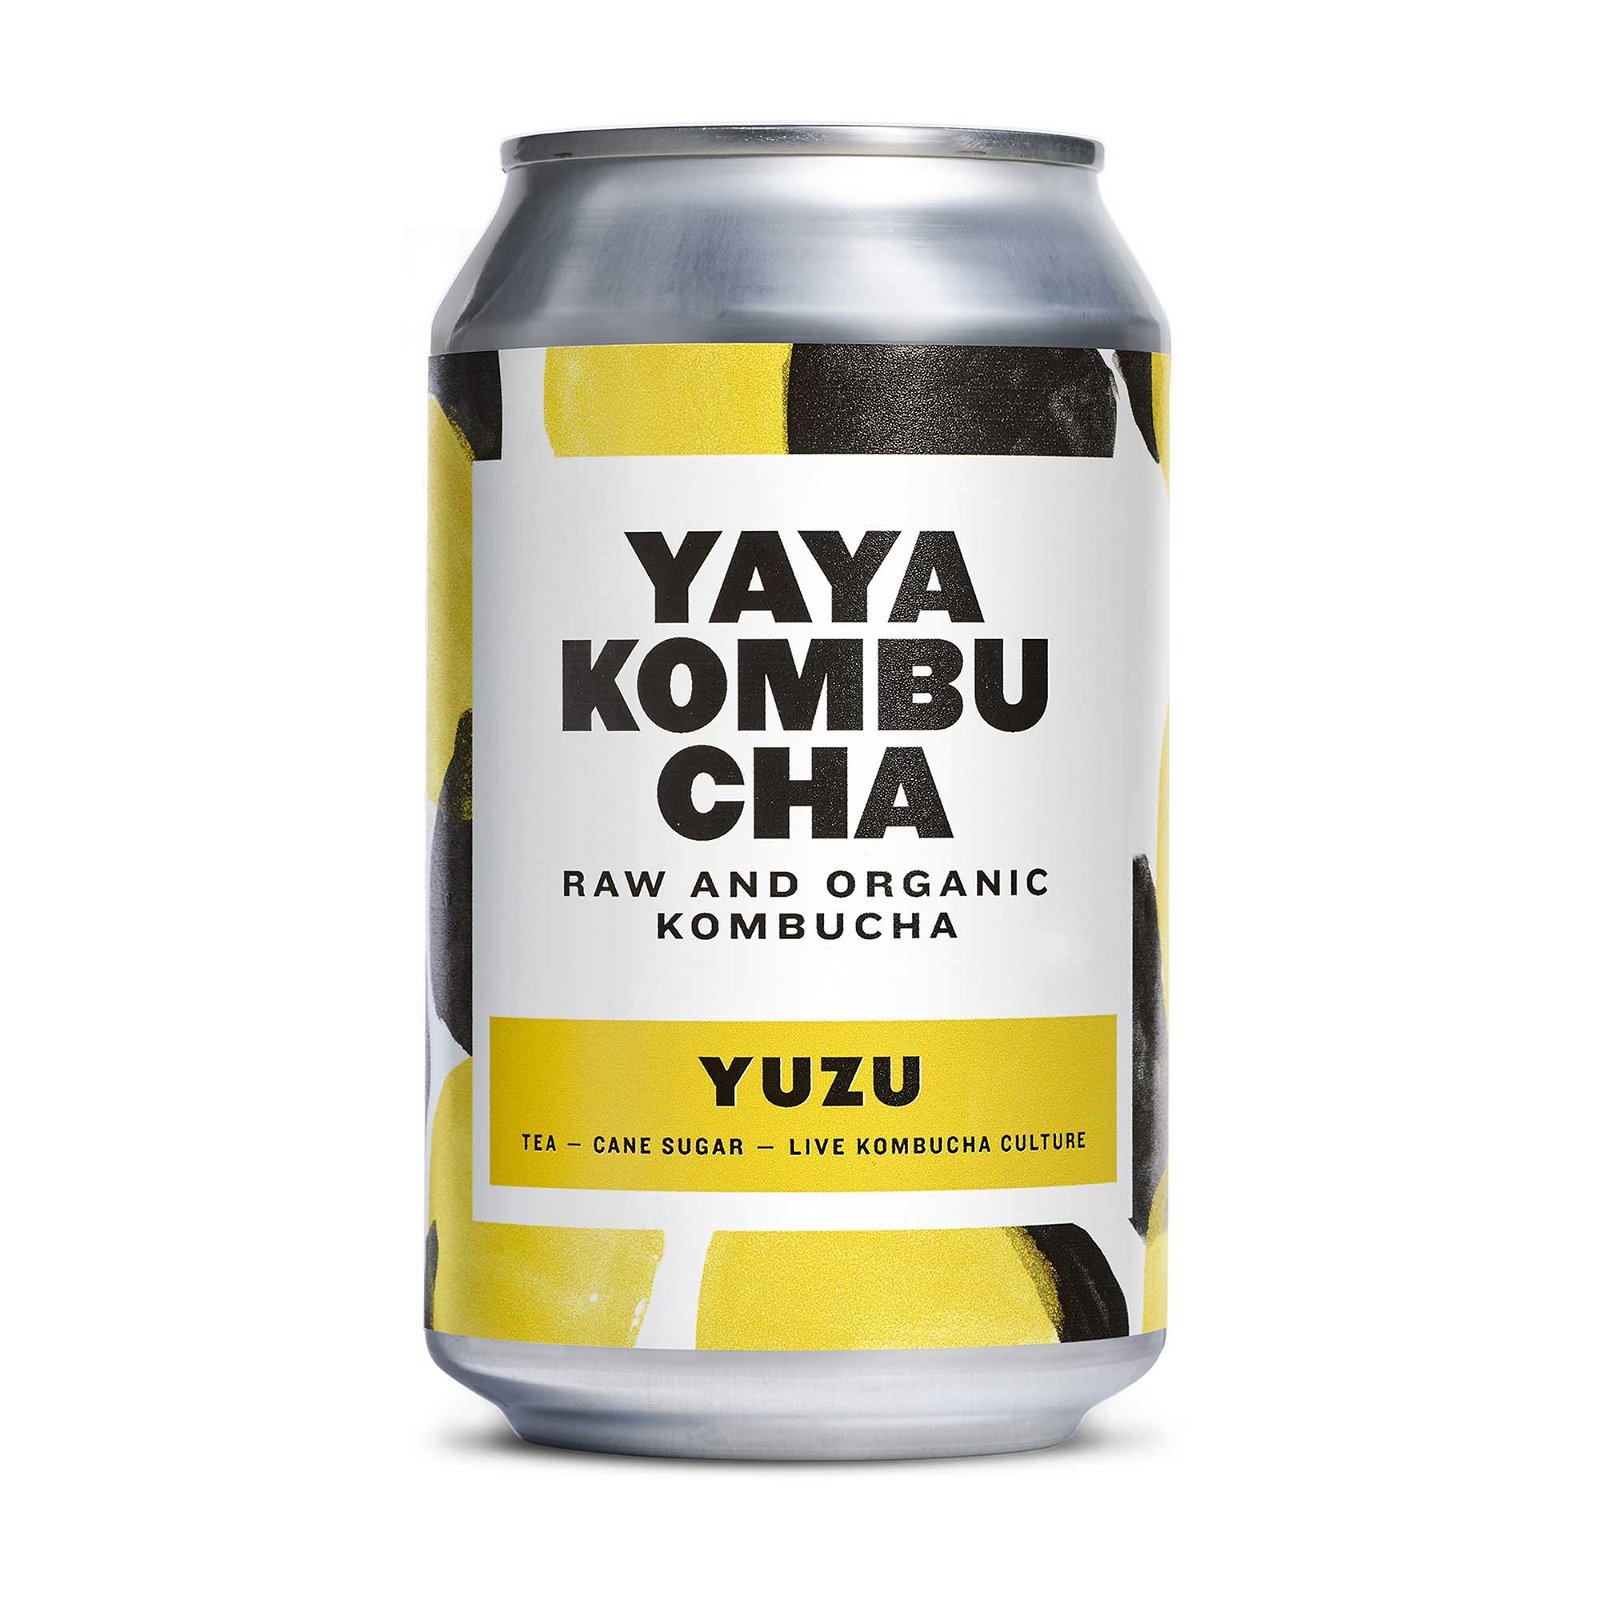 YAYA Kombucha - Yuzu 330ml